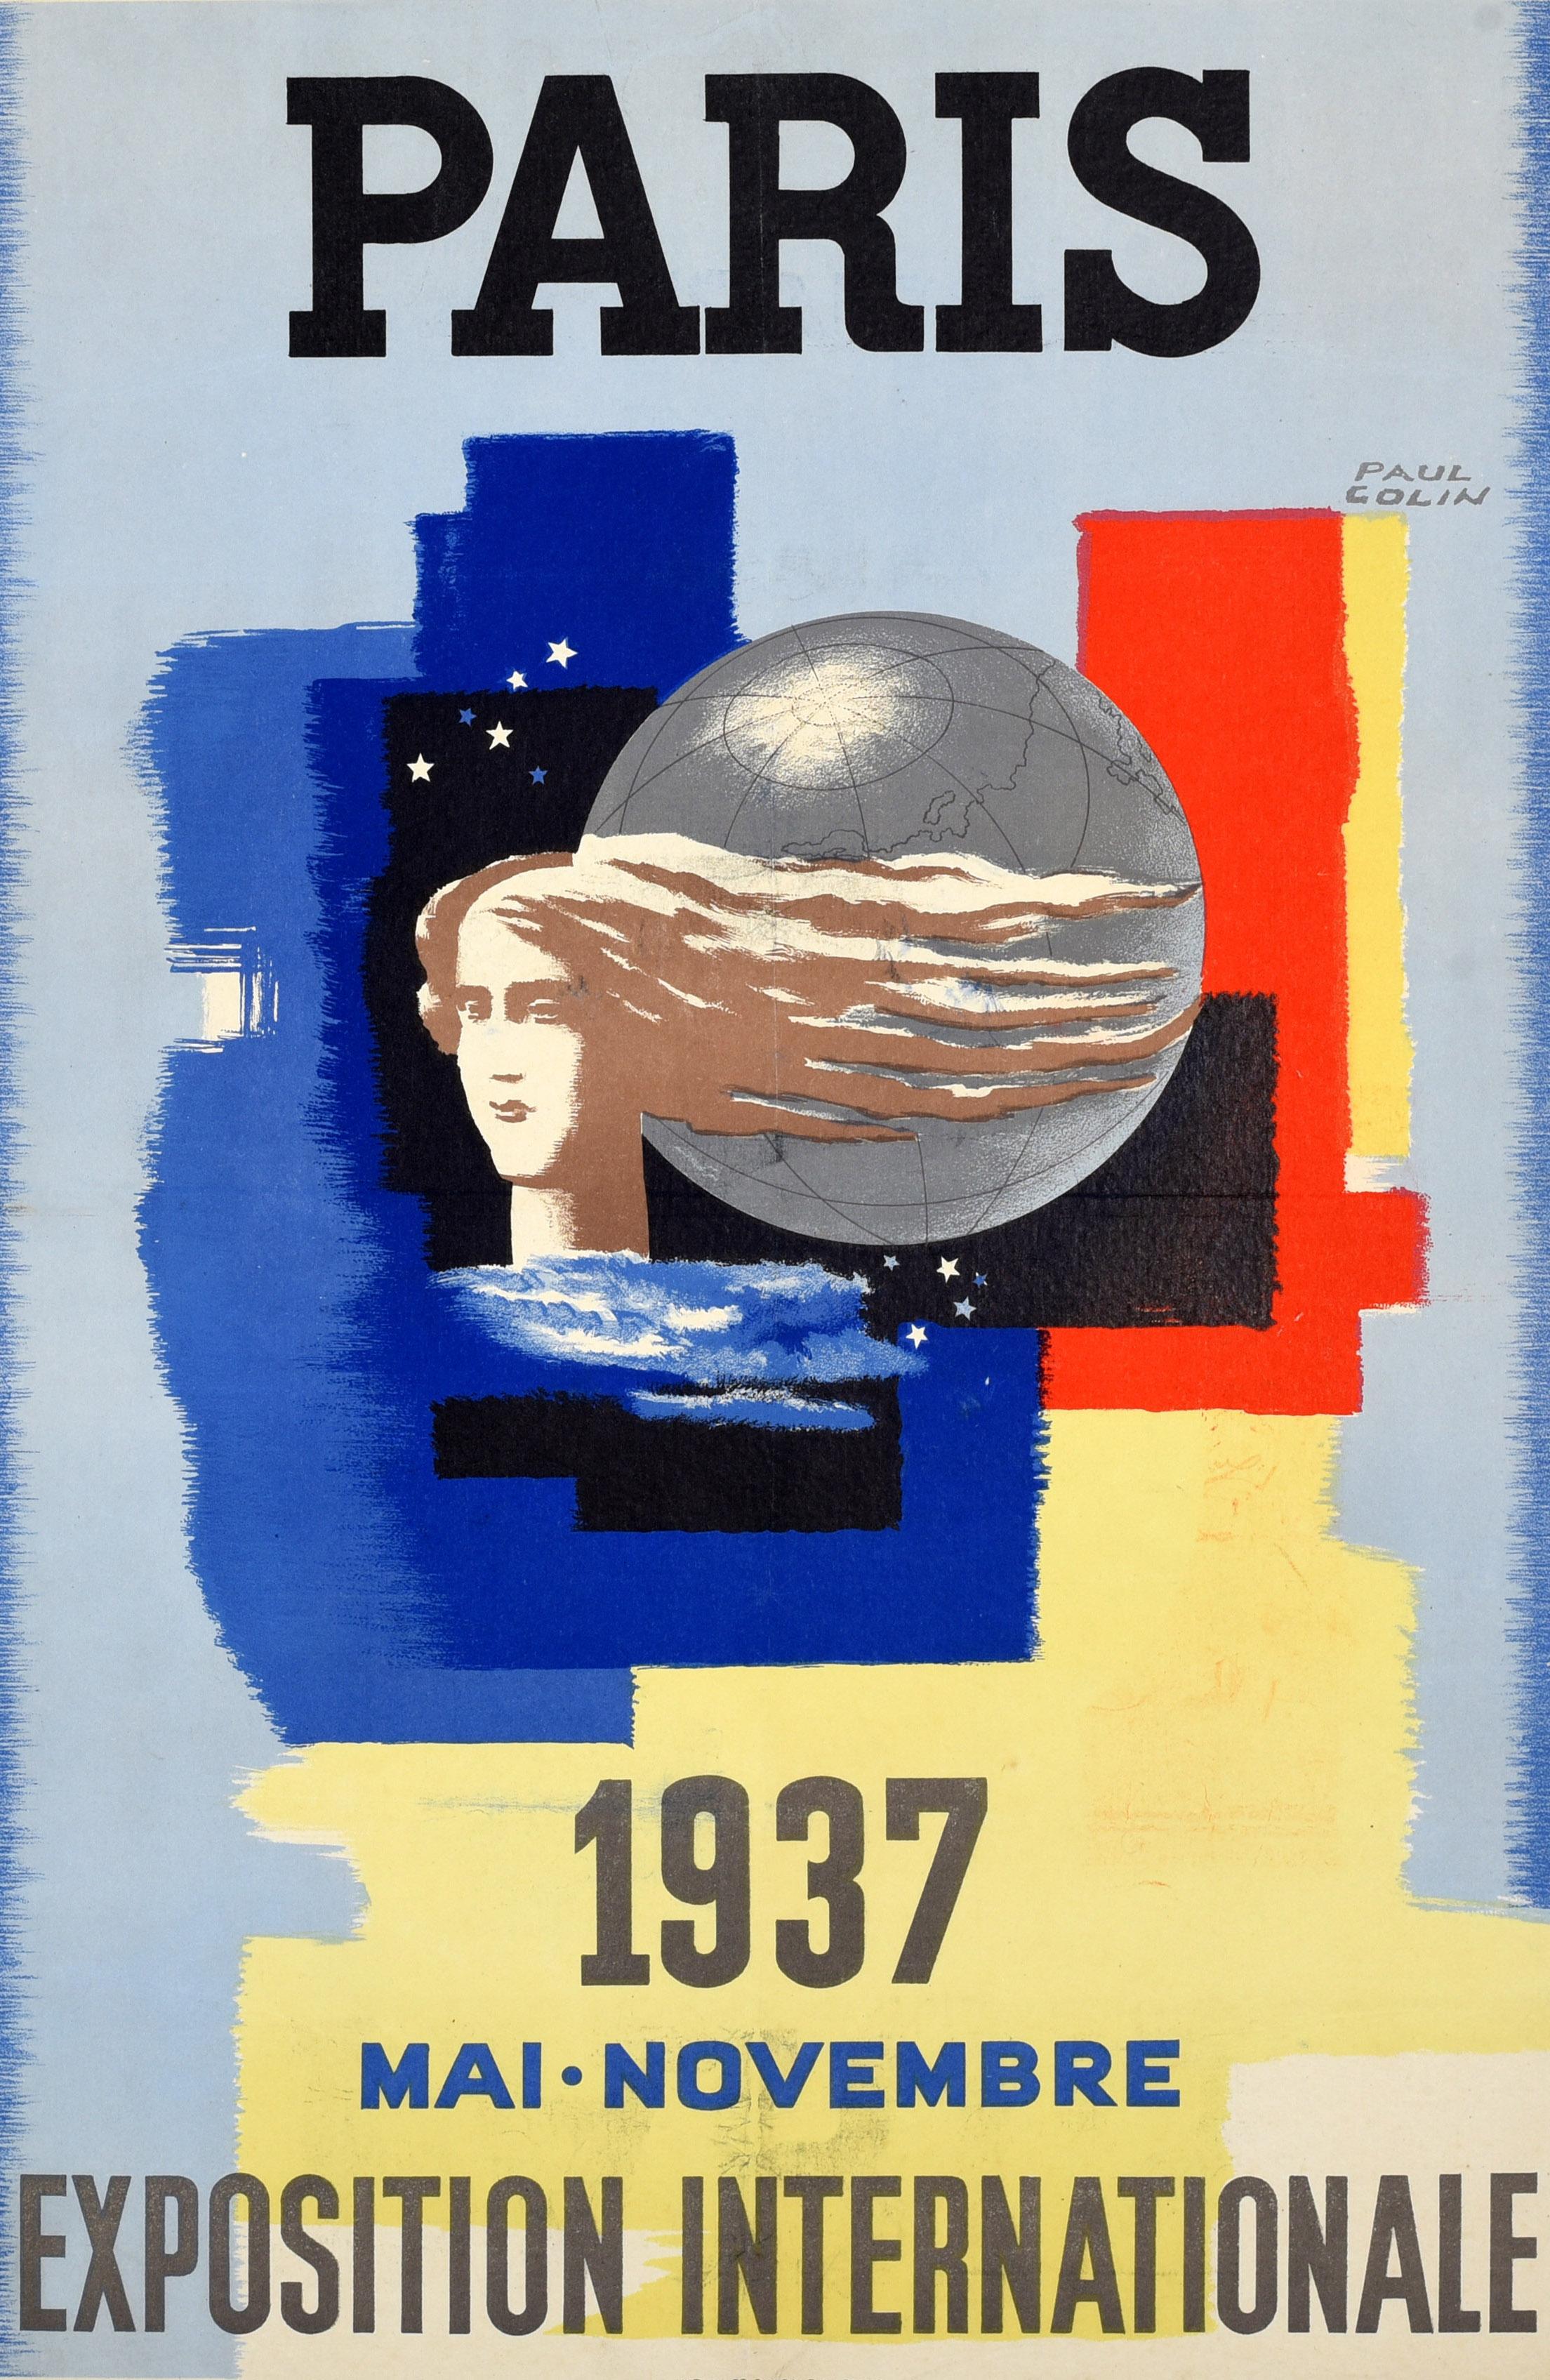 Affiche publicitaire originale pour l'Exposition Internationale de Paris 1937, qui s'est tenue de mai à novembre. Le dessin de Paul Colin (1892-1985) représente une femme aux cheveux flottant au vent autour d'un globe avec des étoiles bleues et